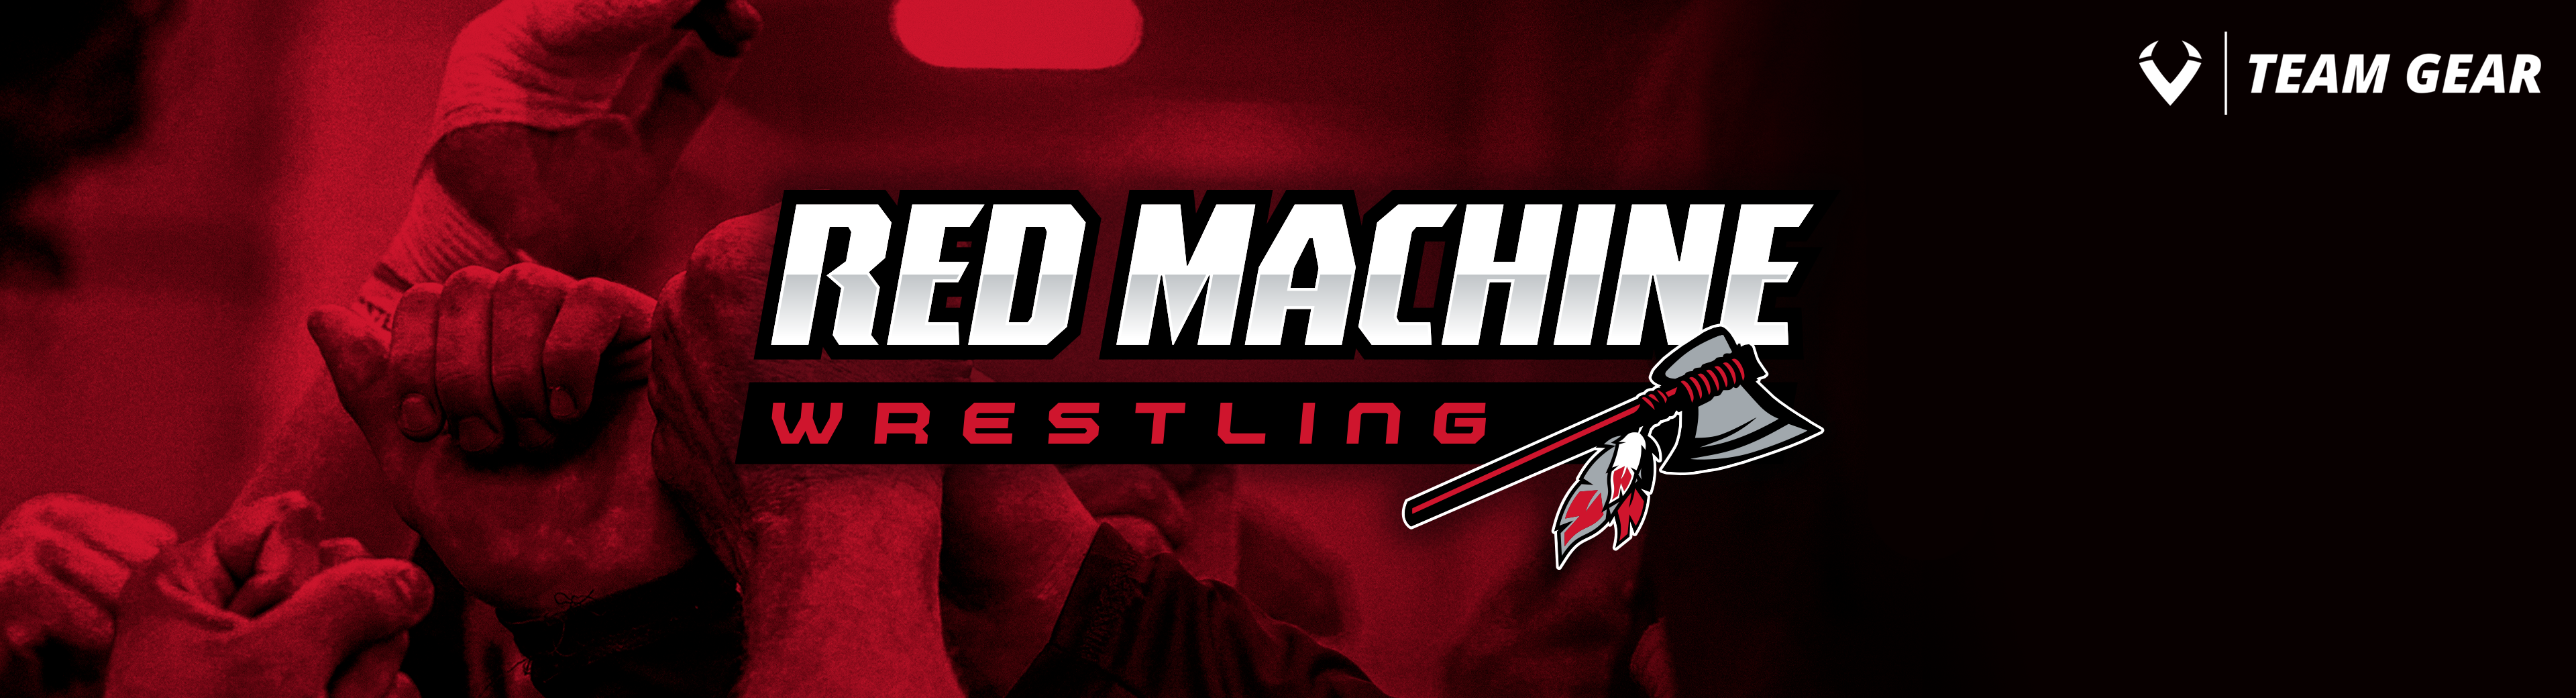 Red Machine Wrestling